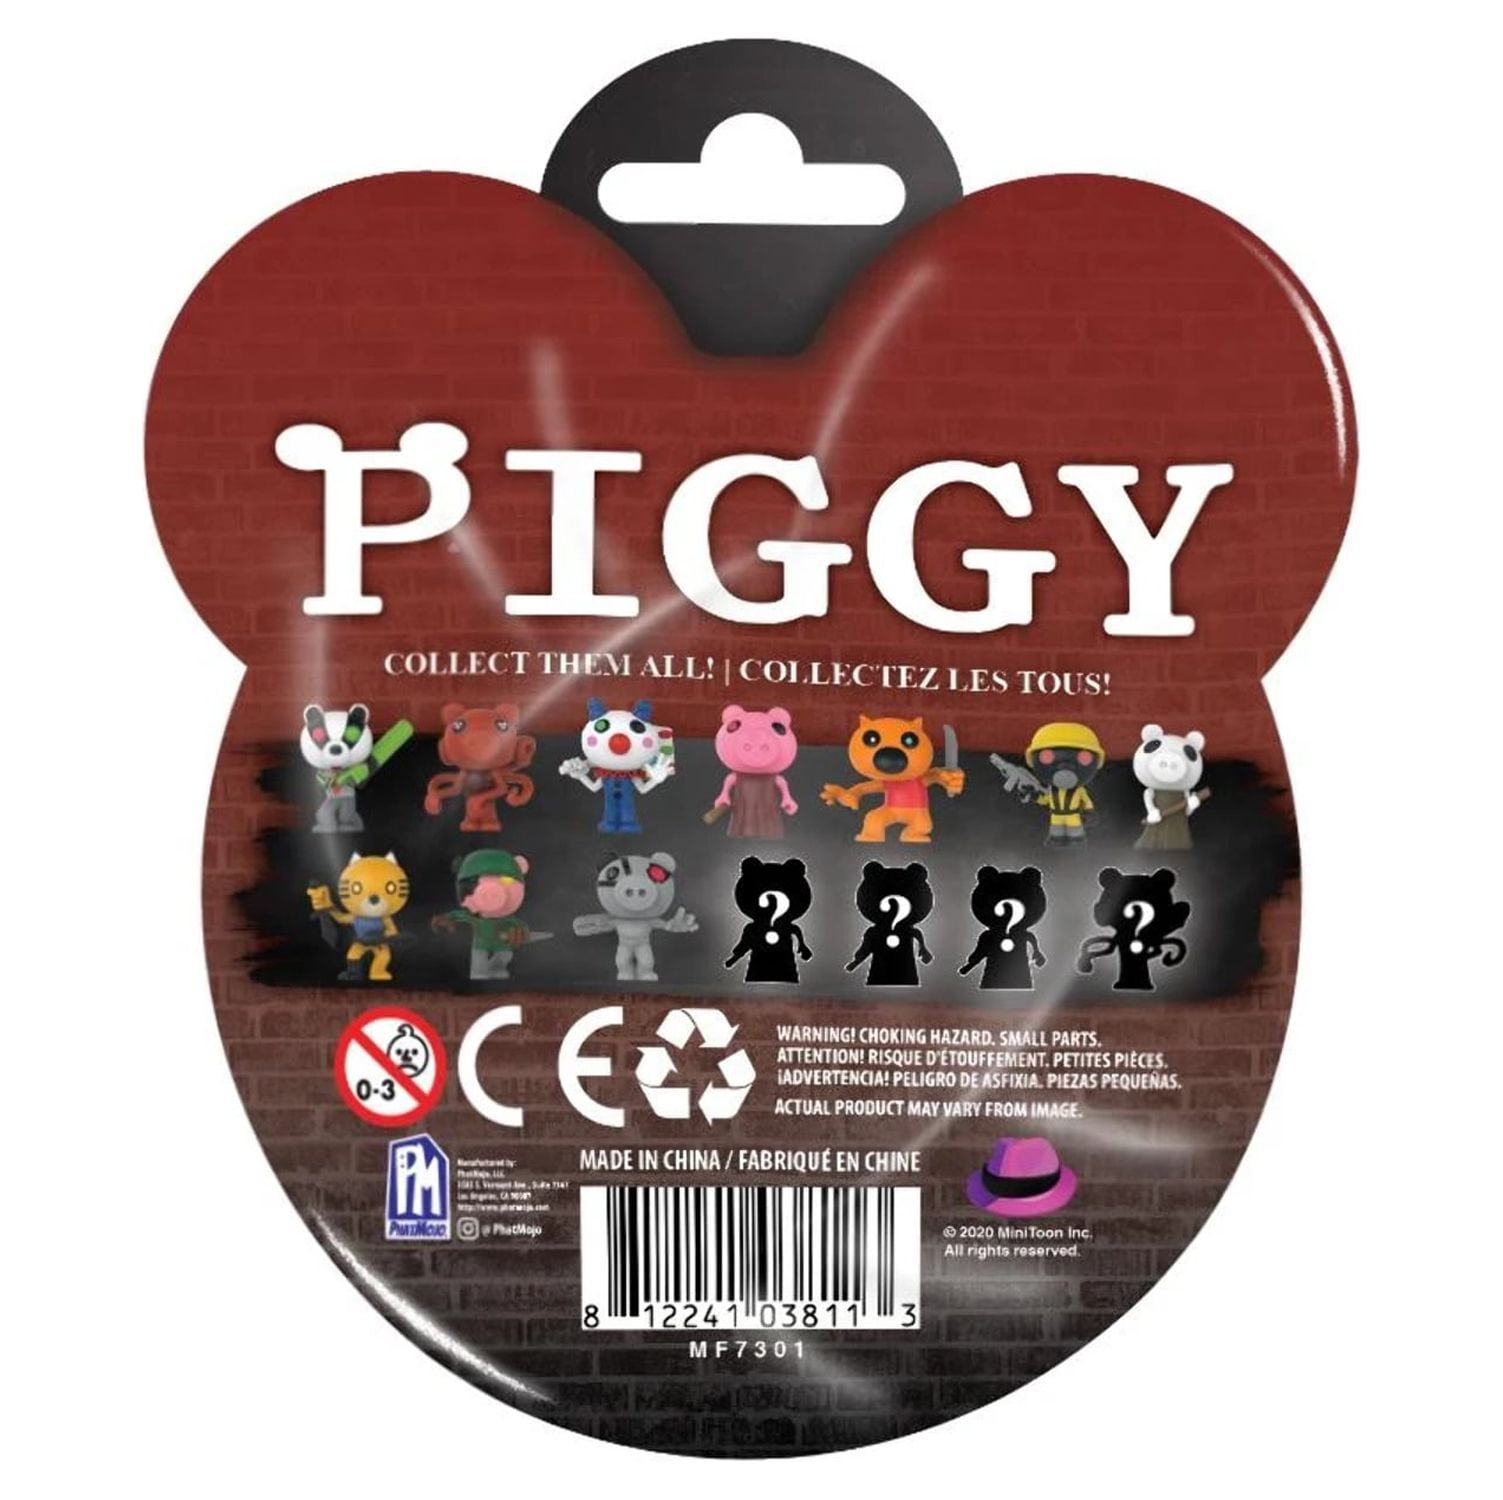 PIGGY - Clipes de personagens da caixa misteriosa, caixa surpresa dos  personagens do jogo Pigggy, inclui DLC, o estilo pode variar, colecione  todos os 10